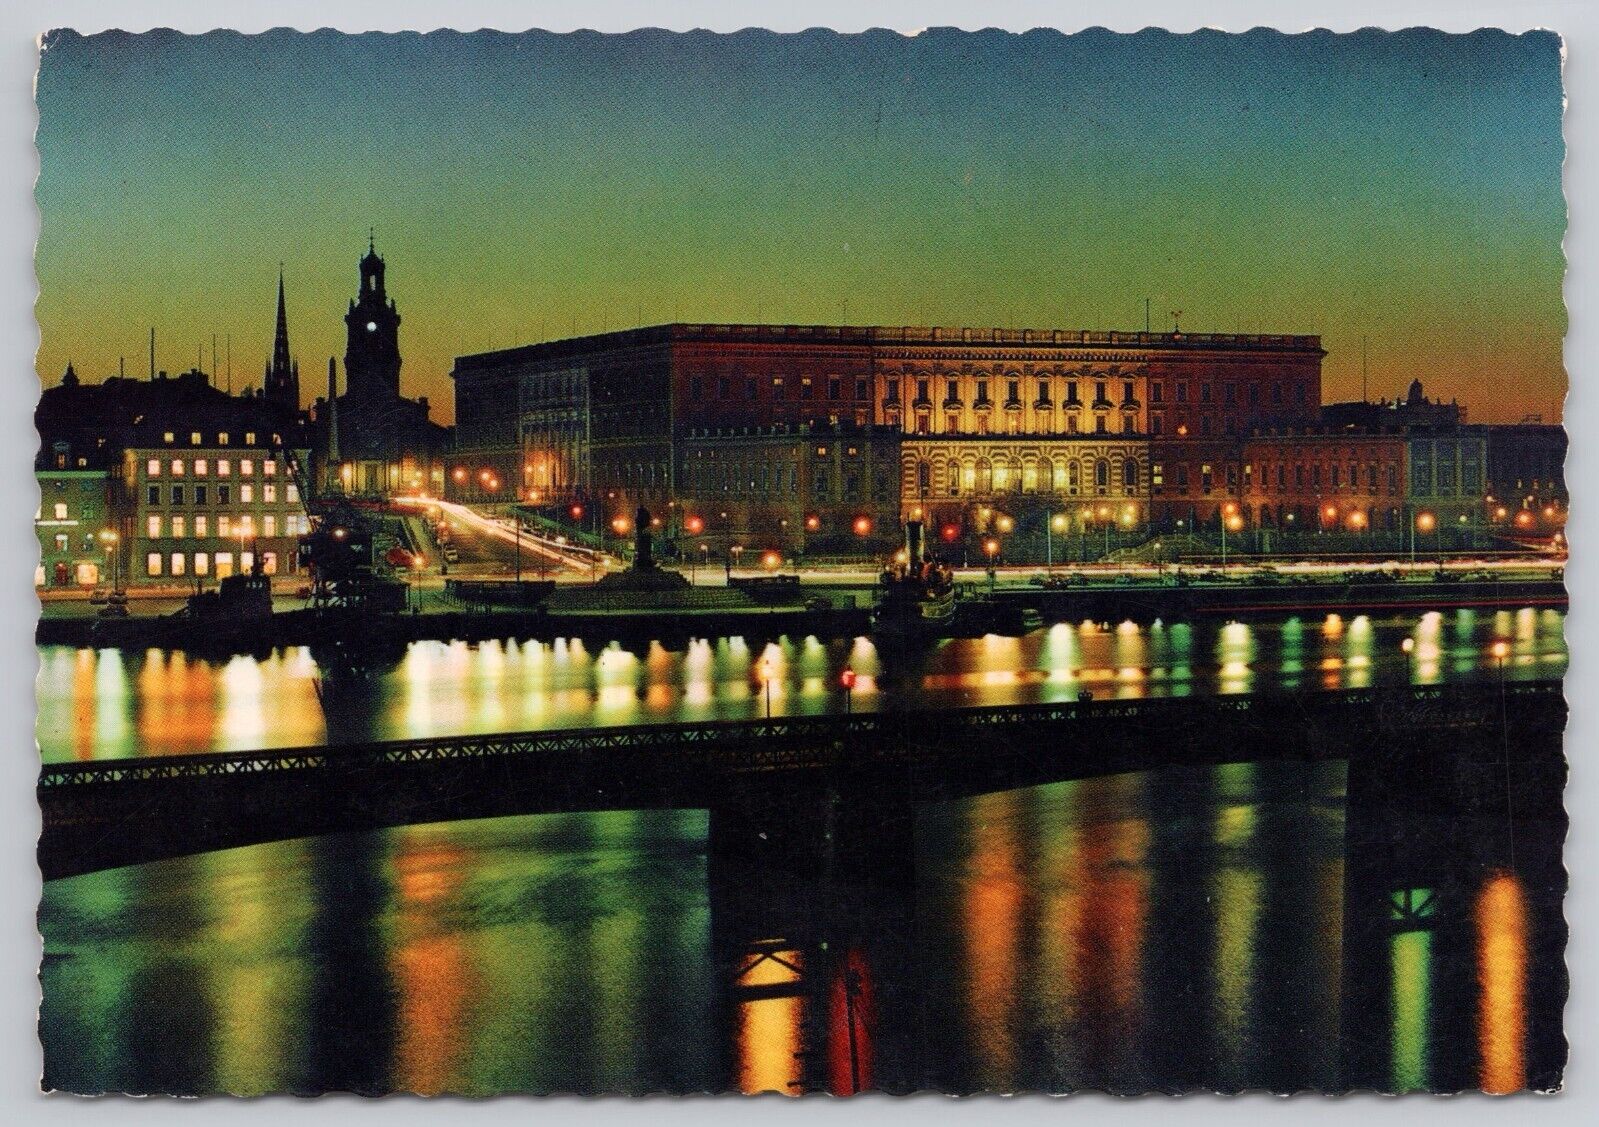 Stockholm Sweden, Royal Palace at Night, Vintage Postcard